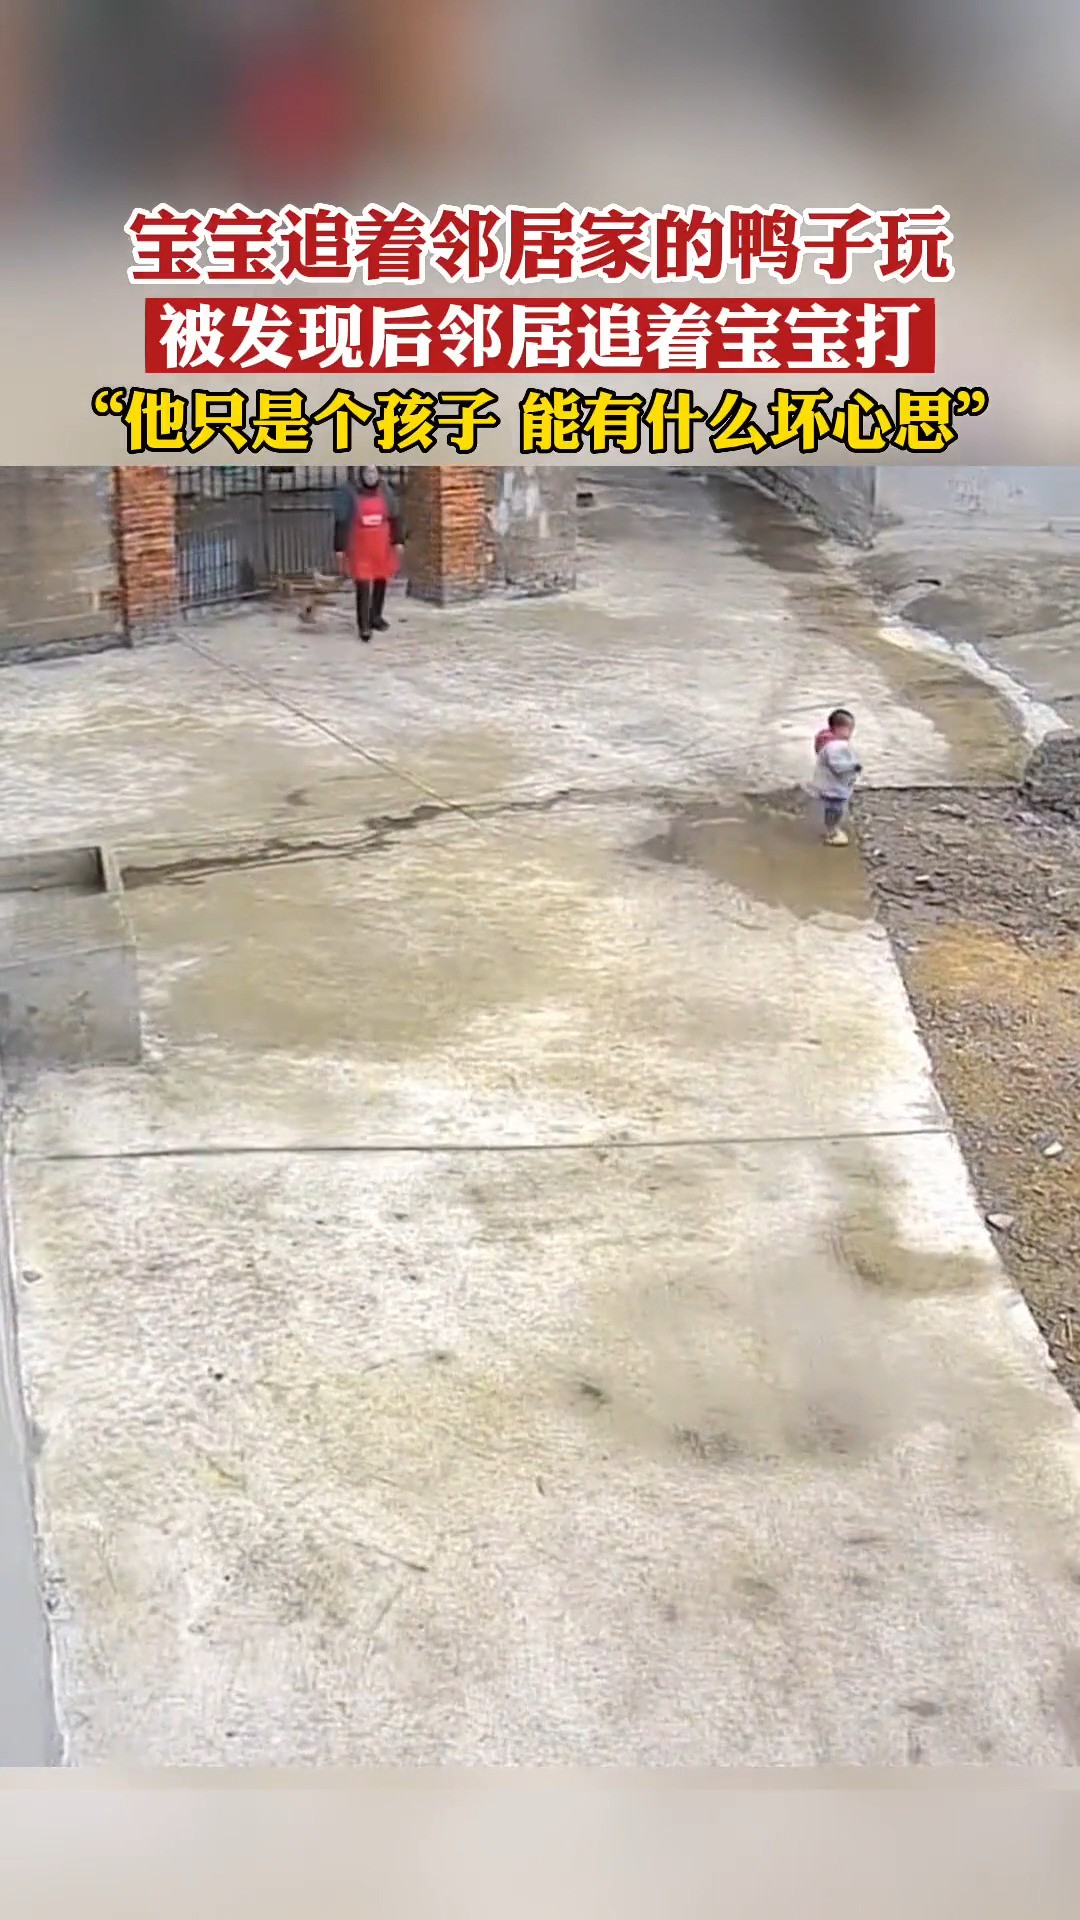 宝宝追着邻居家的鸭子玩，被发现后邻居追着宝宝打